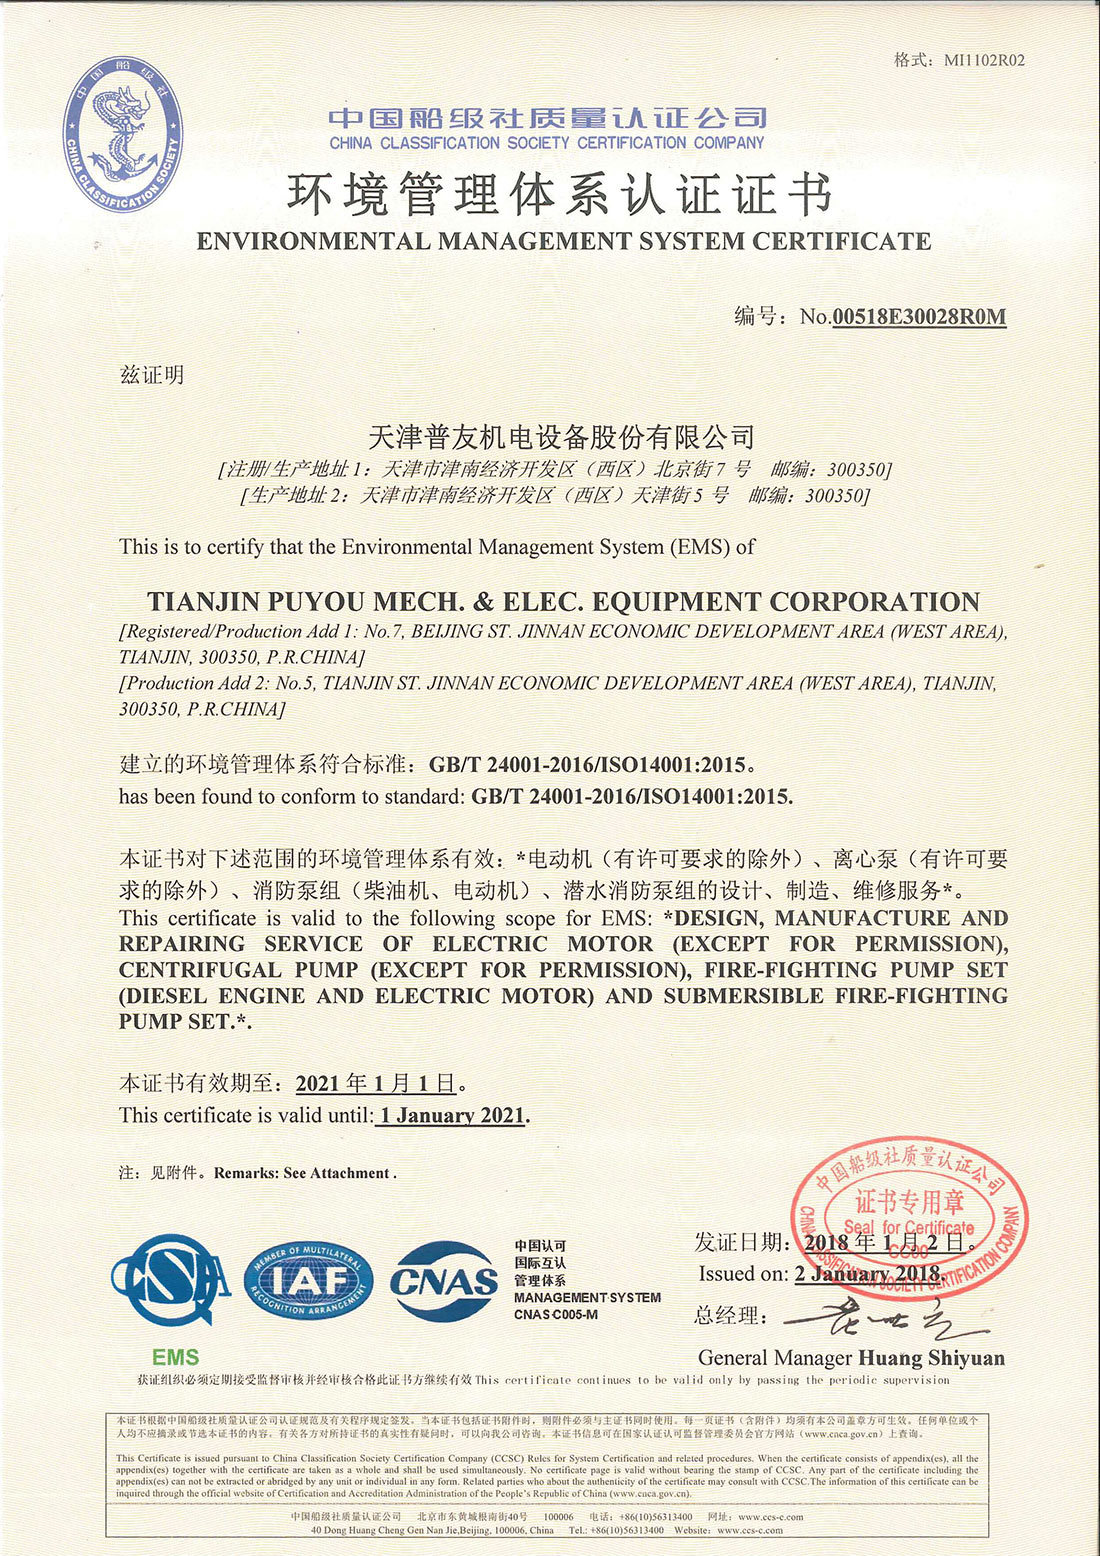 公司获得中国船级社环境管理体系认证、职业健康安全管理体系认证、HSE管理体系认证